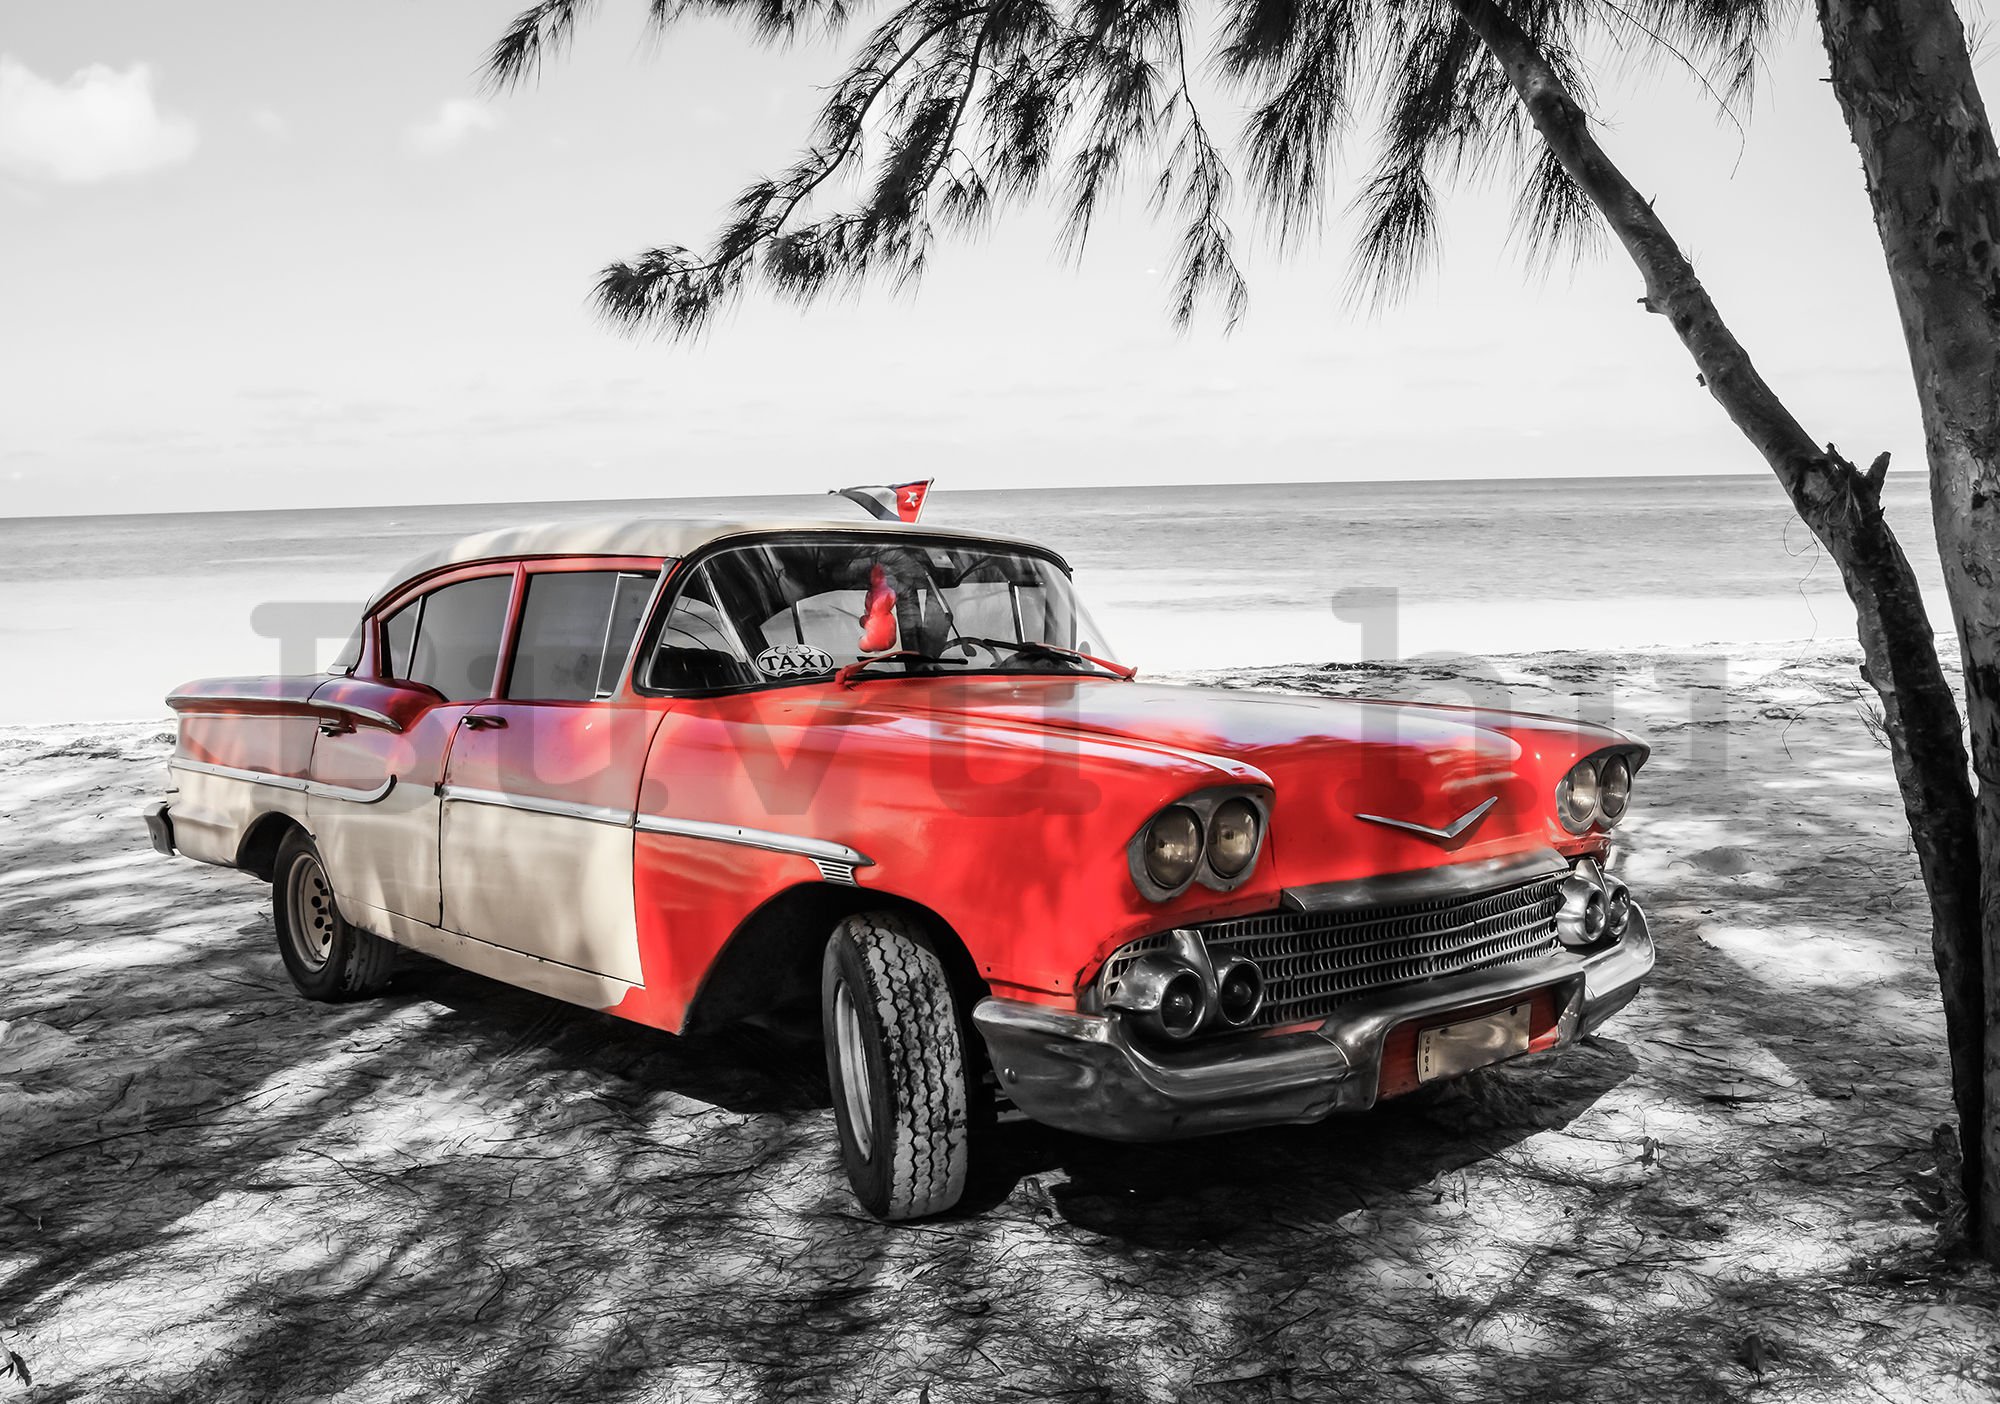 Fotótapéta: Kuba piros autó a tenger mellett - 184x254 cm